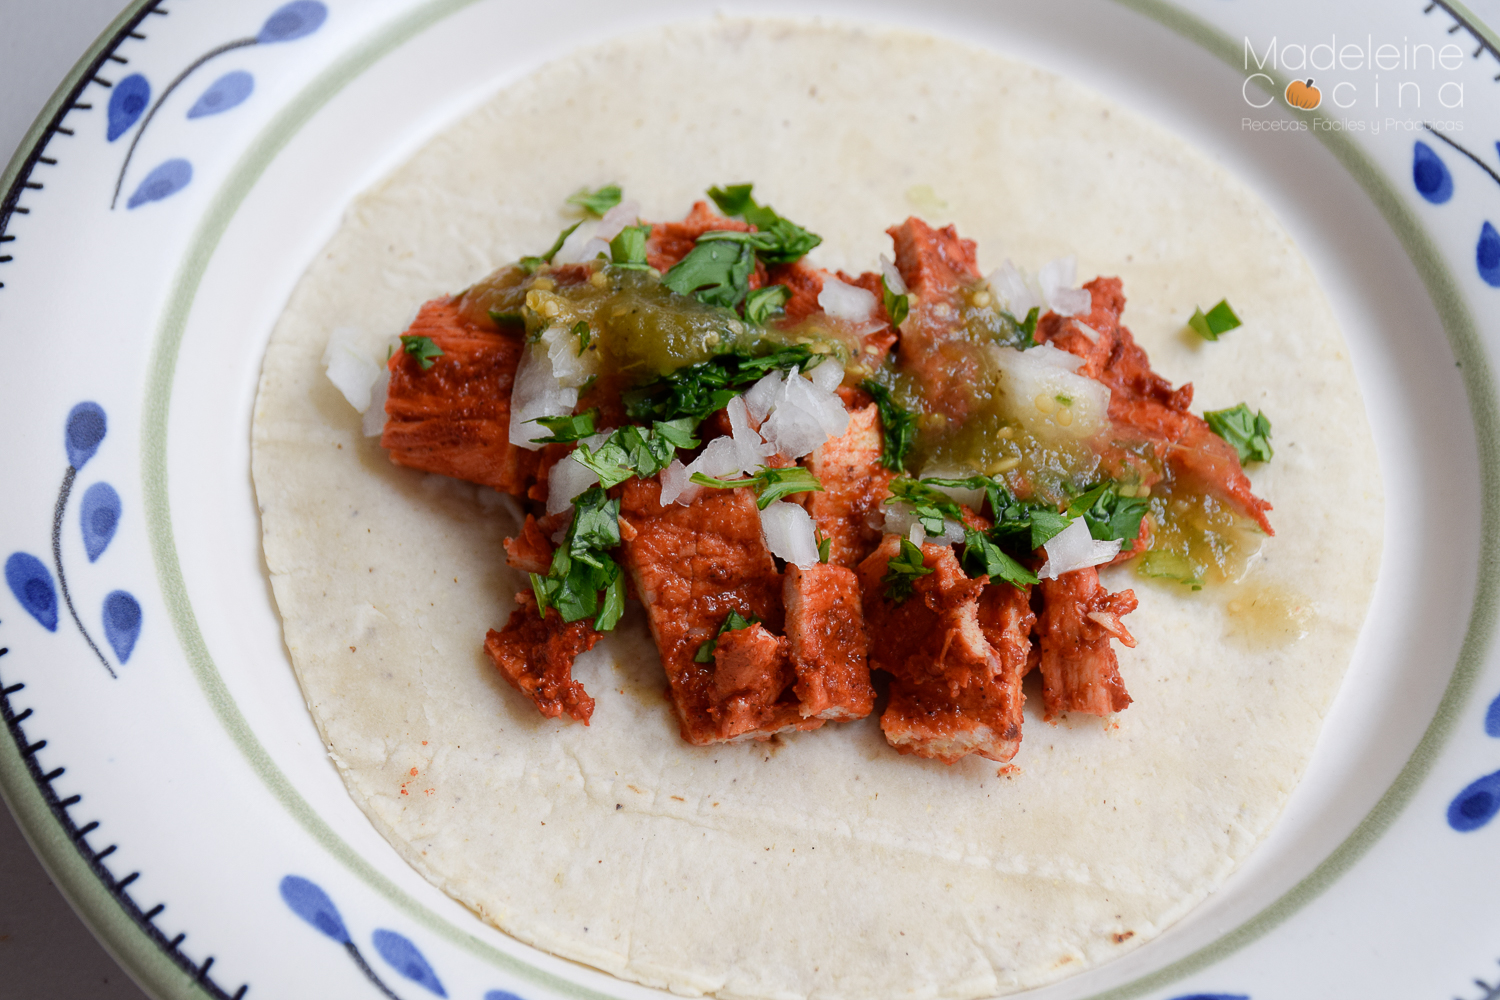  receta tacos adobados achiote